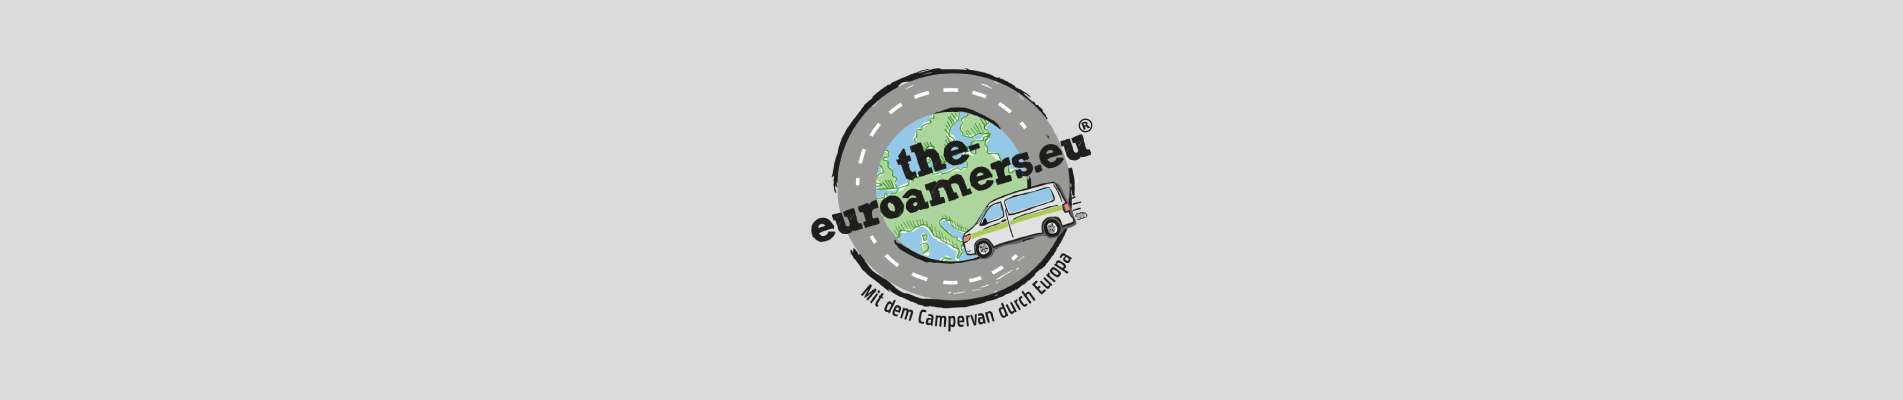 the-euroamers-mit-dem-campervan-durch-europa